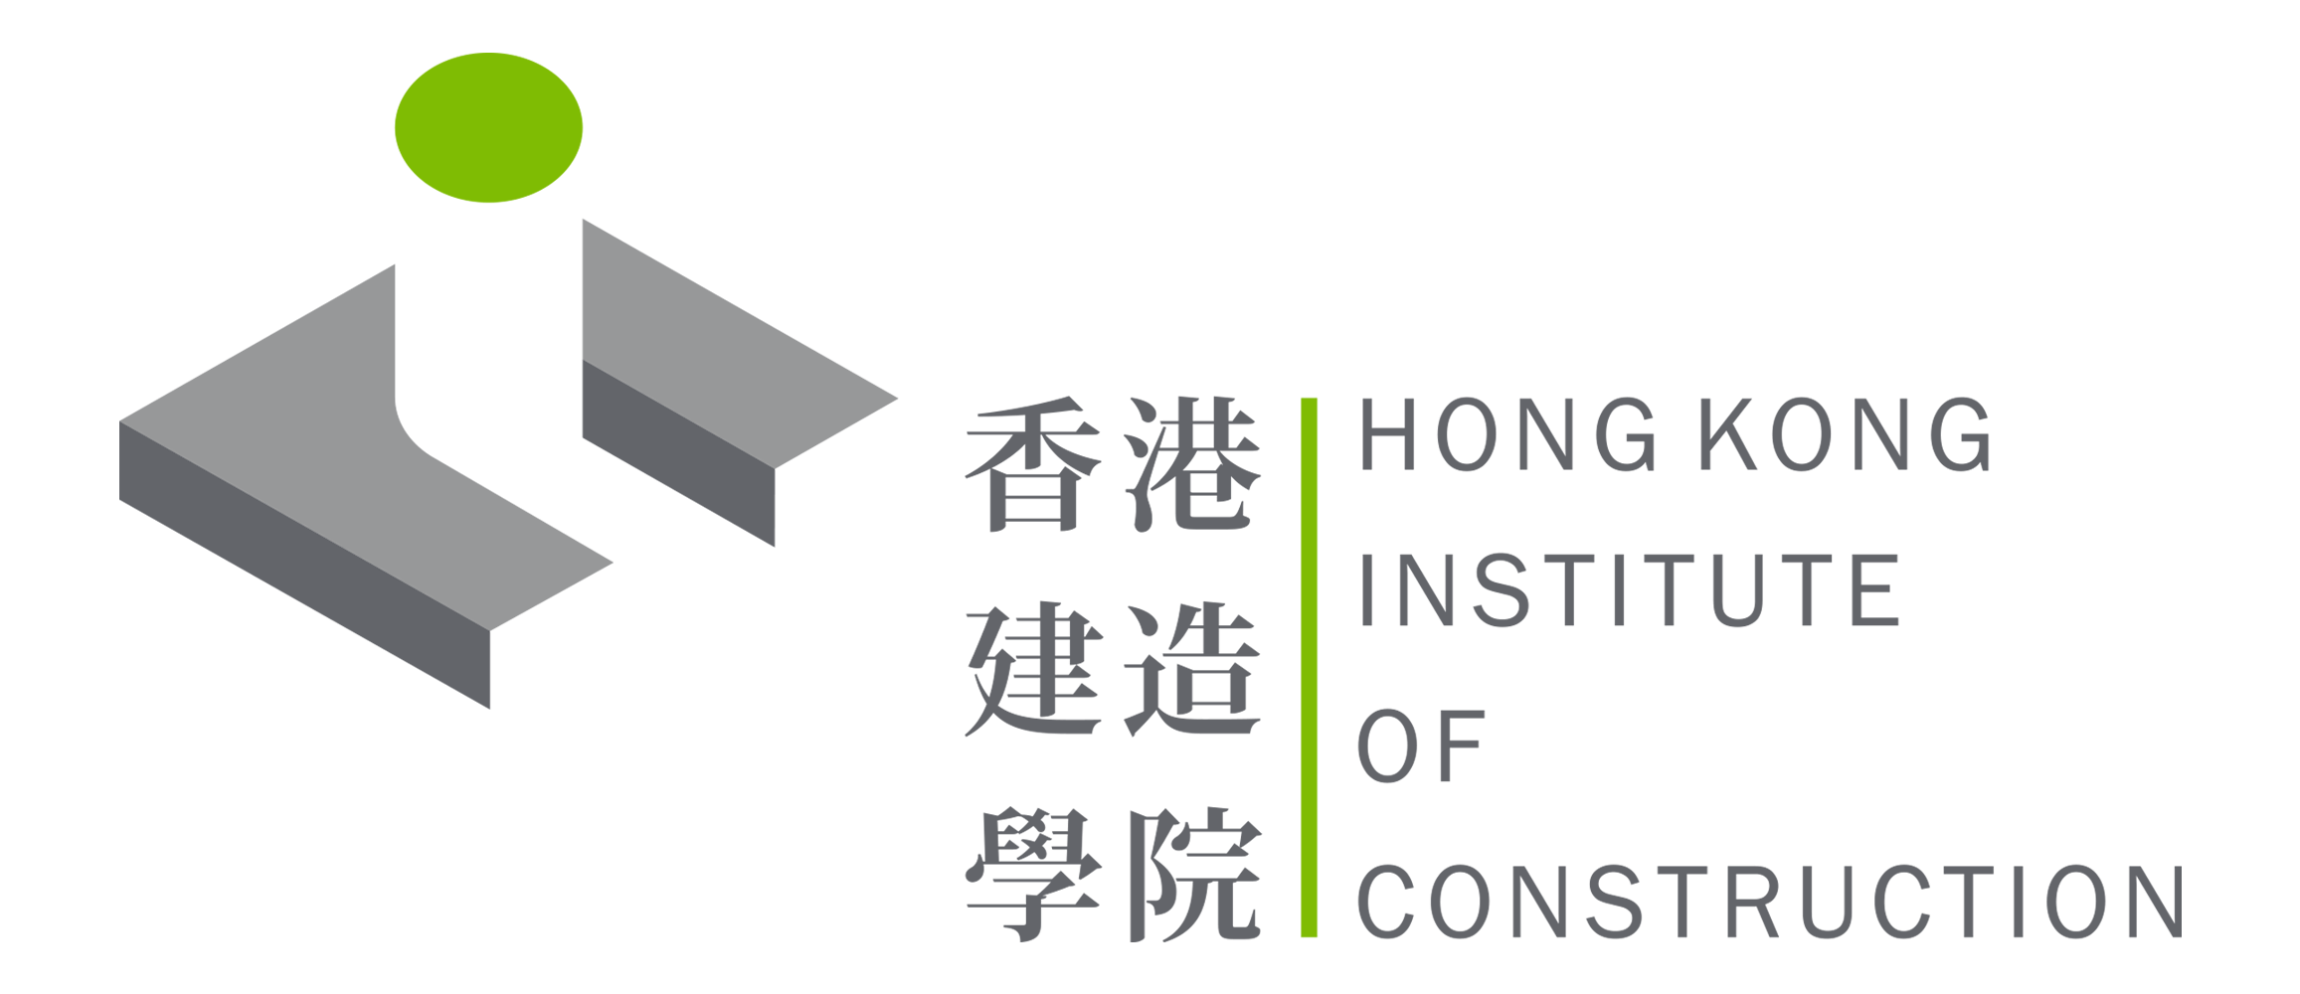 本頁圖片/檔案 - hkic_logo (1)